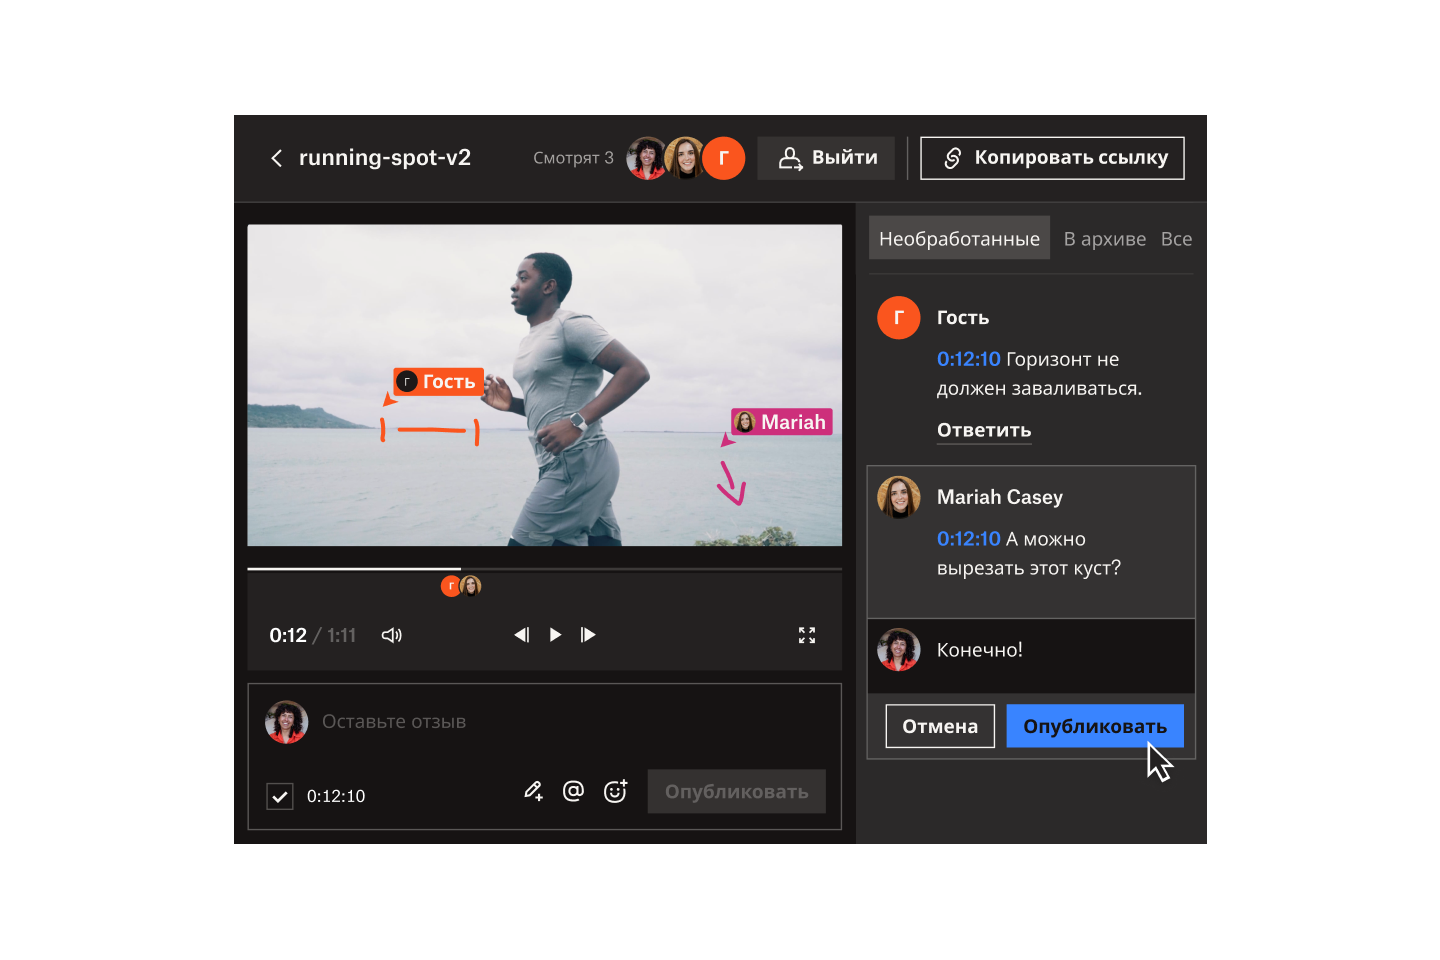 Гость и Мэрайя Кейси делают покадровые пометки и добавляют комментарии к видео под названием running-spot-v2 в Dropbox Replay.